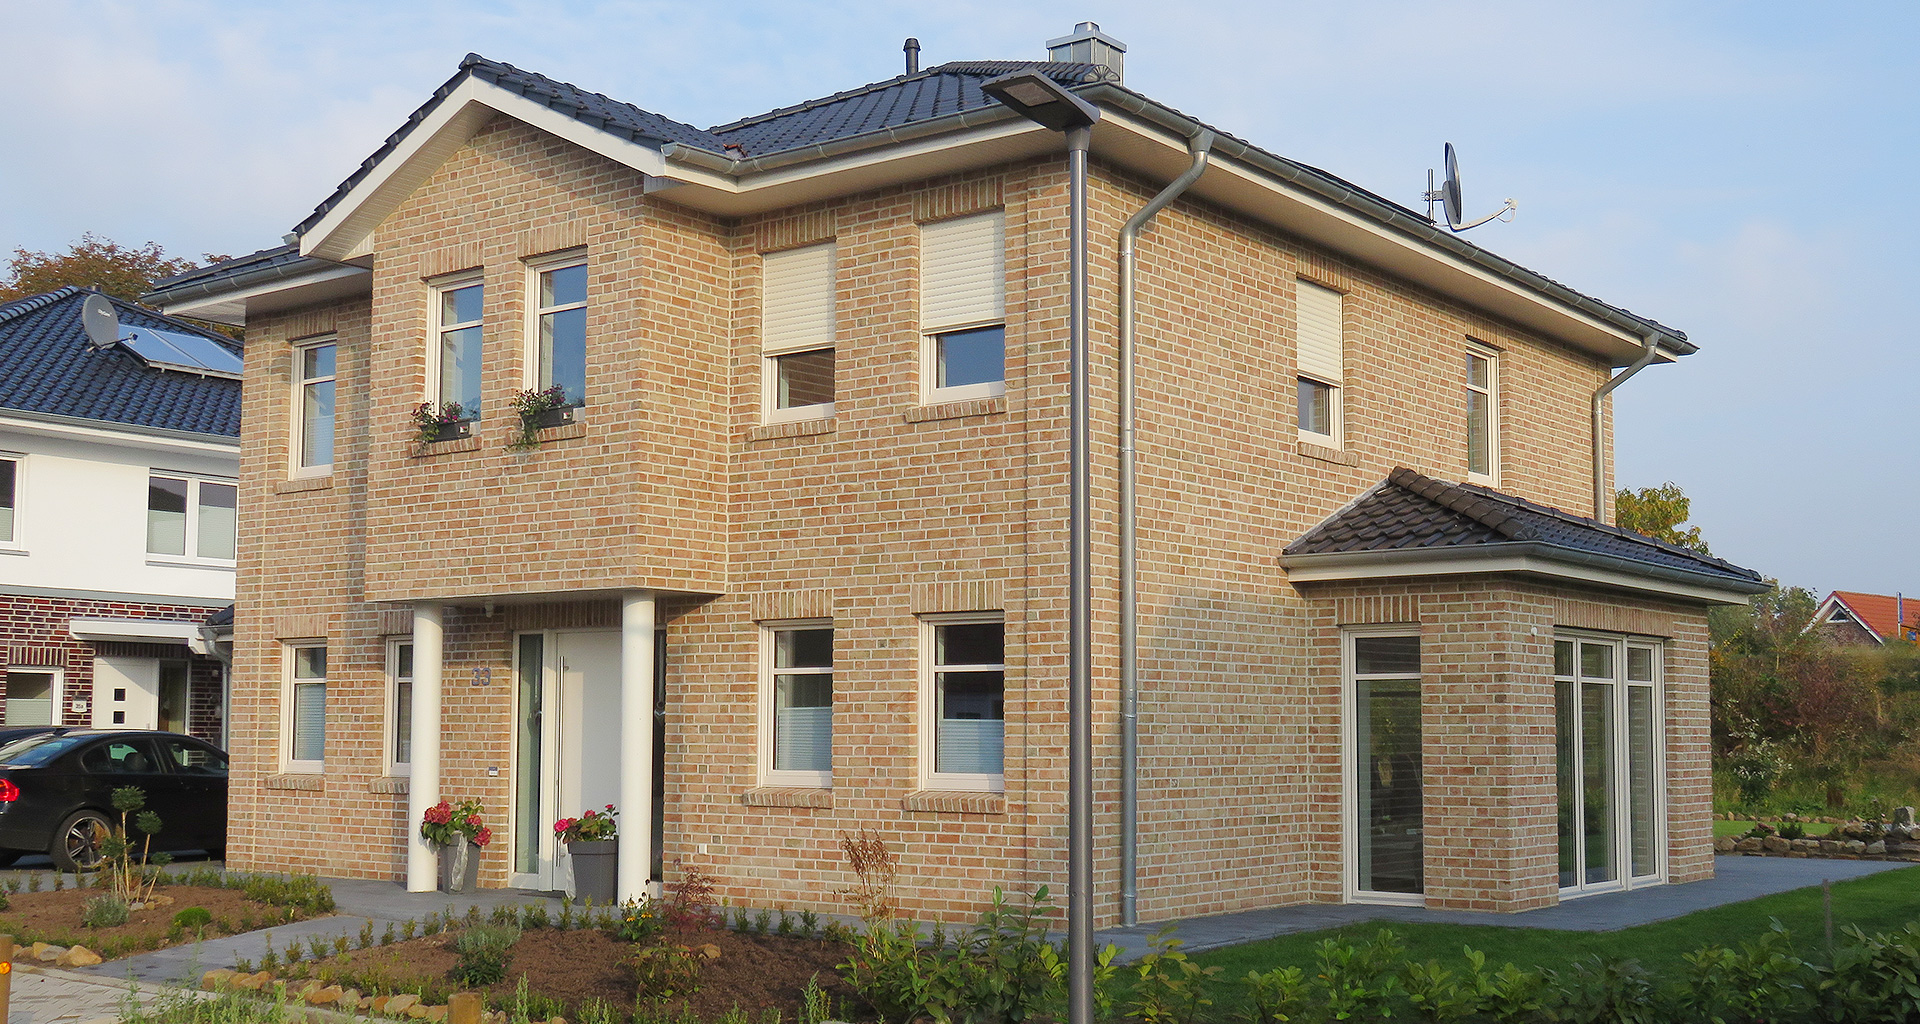 Einfamilienhaus Front mit Eingang rechte Seite Wietmarschen-Lohne Emsland 2015